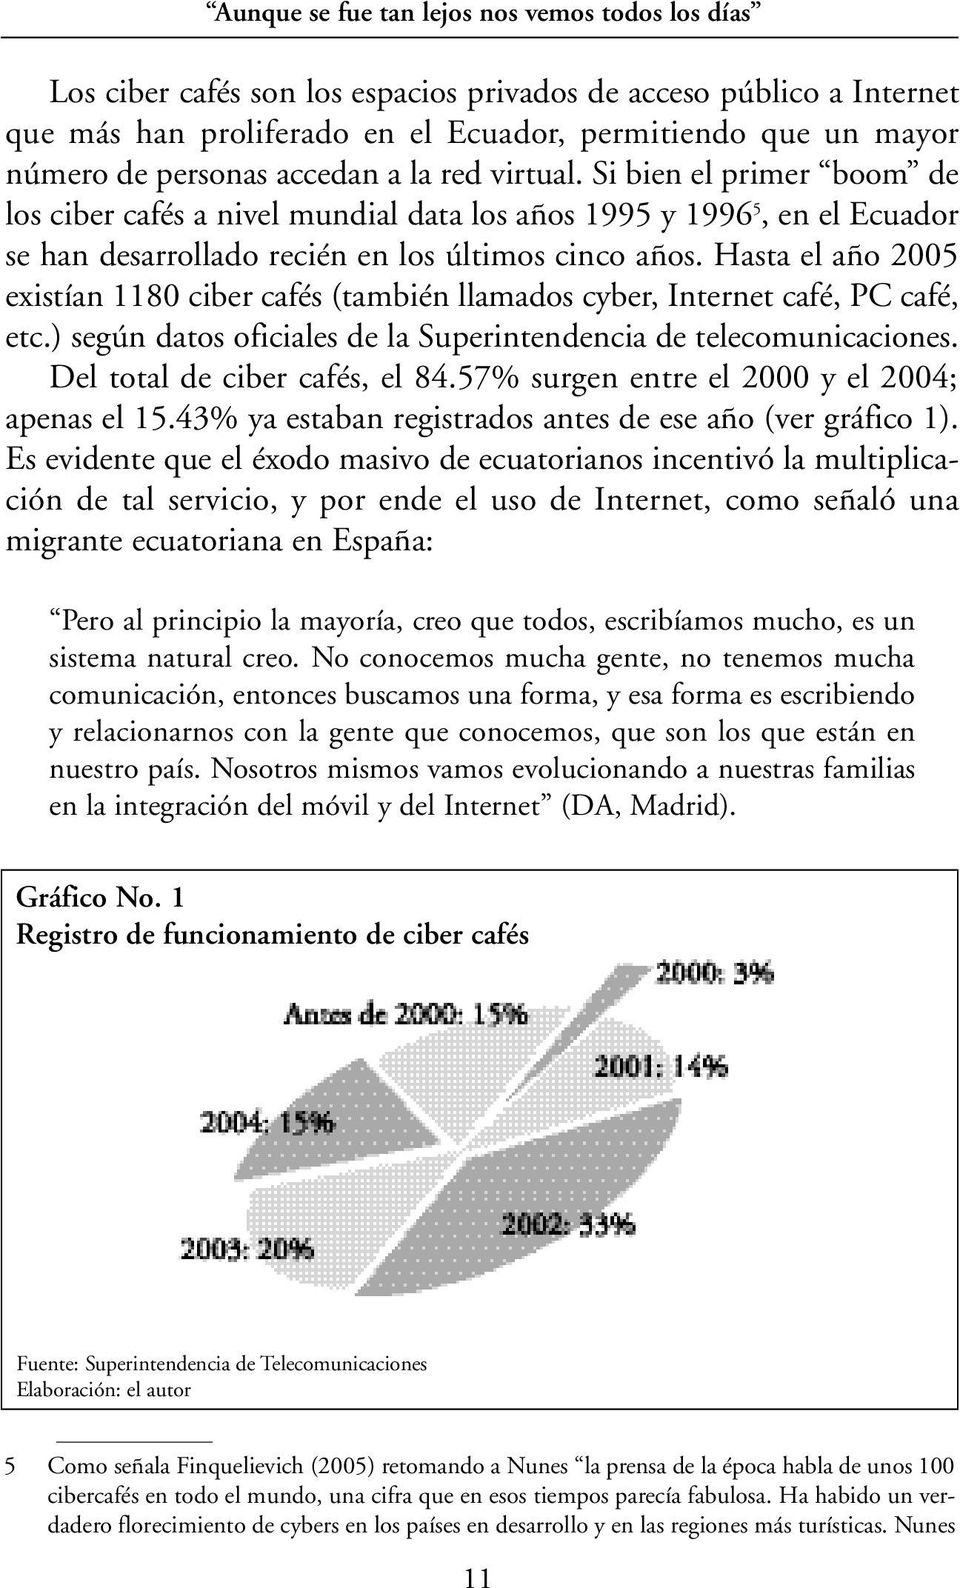 Hasta el año 2005 existían 1180 ciber cafés (también llamados cyber, Internet café, PC café, etc.) según datos oficiales de la Superintendencia de telecomunicaciones. Del total de ciber cafés, el 84.